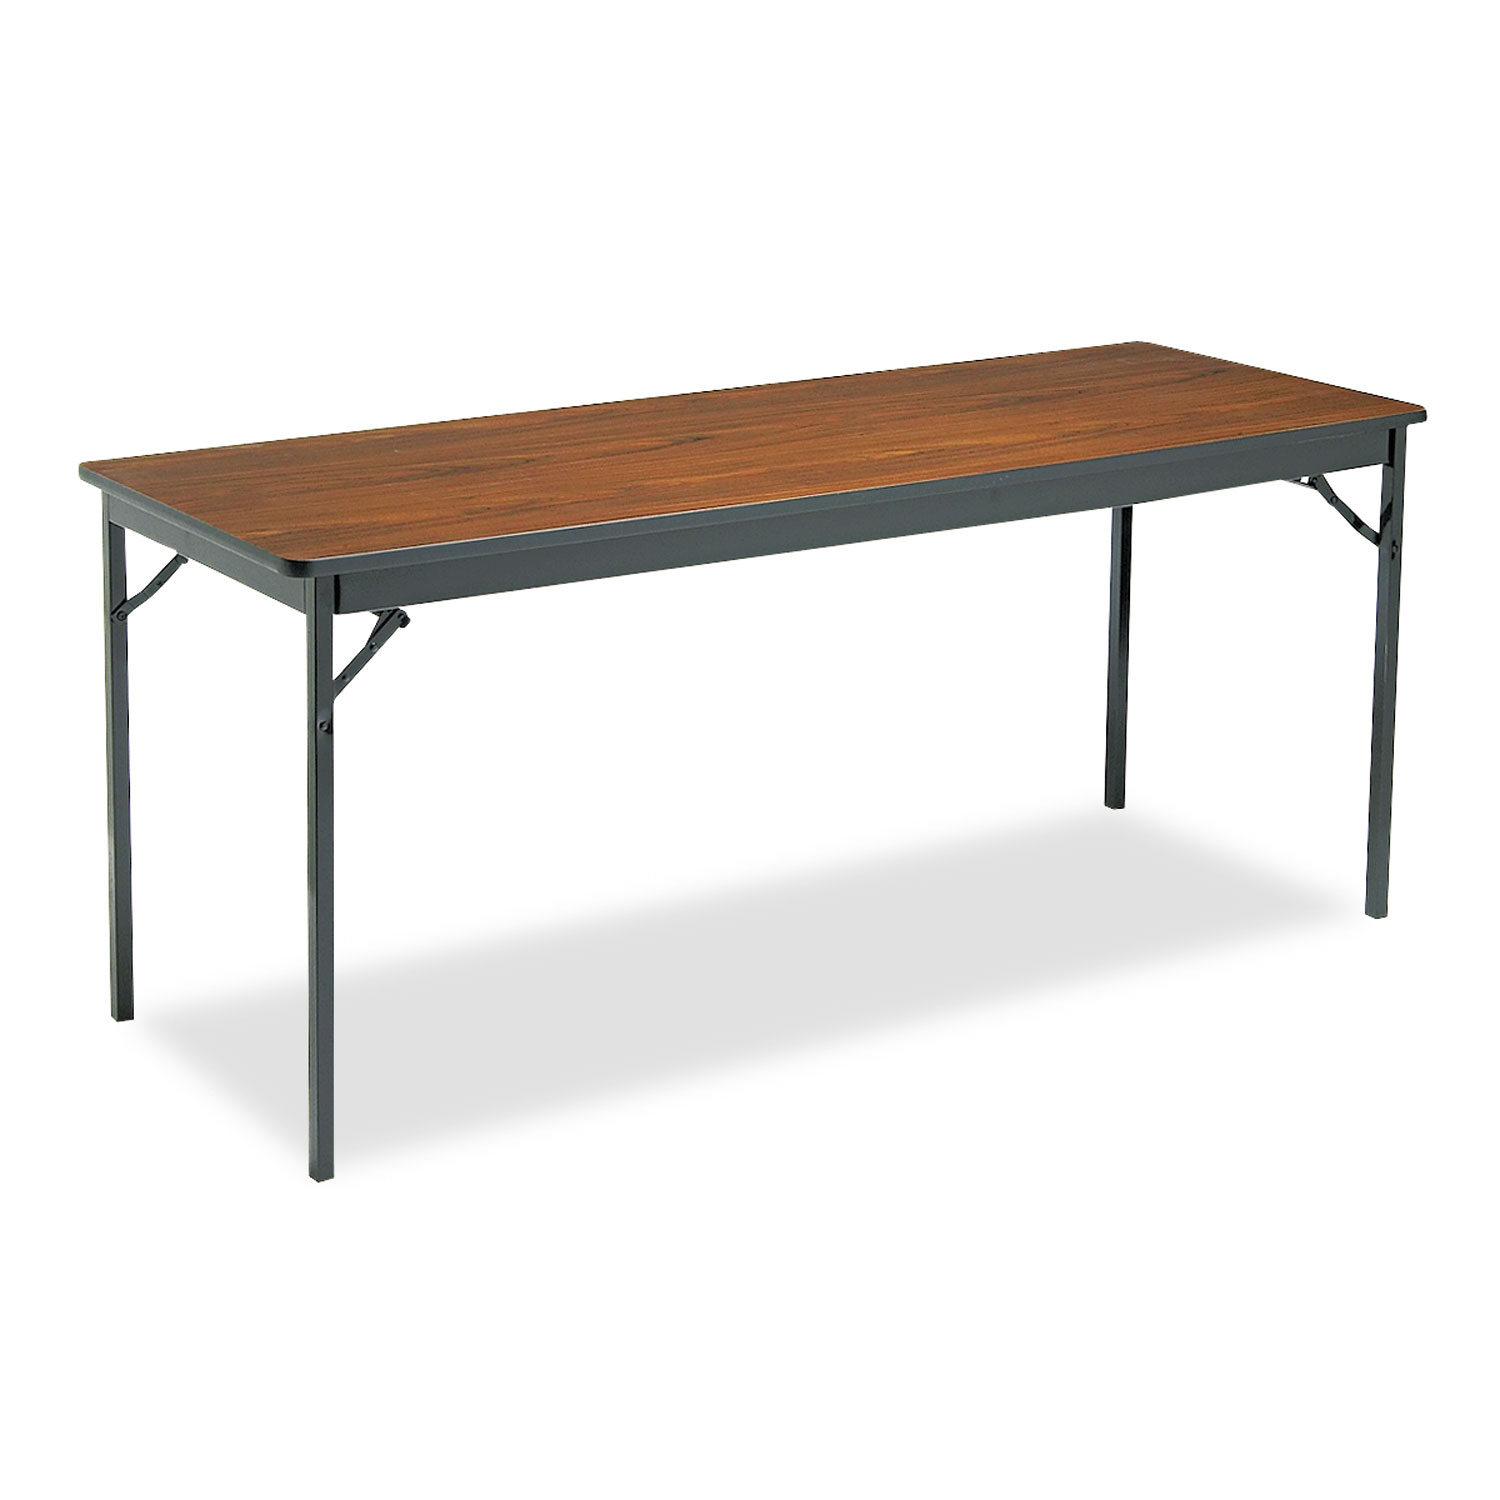  Barricks CL2472-WA Special Size Folding Table, Rectangular, 72w x 24d x 30h, Walnut/Black (BRKCL2472WA) 